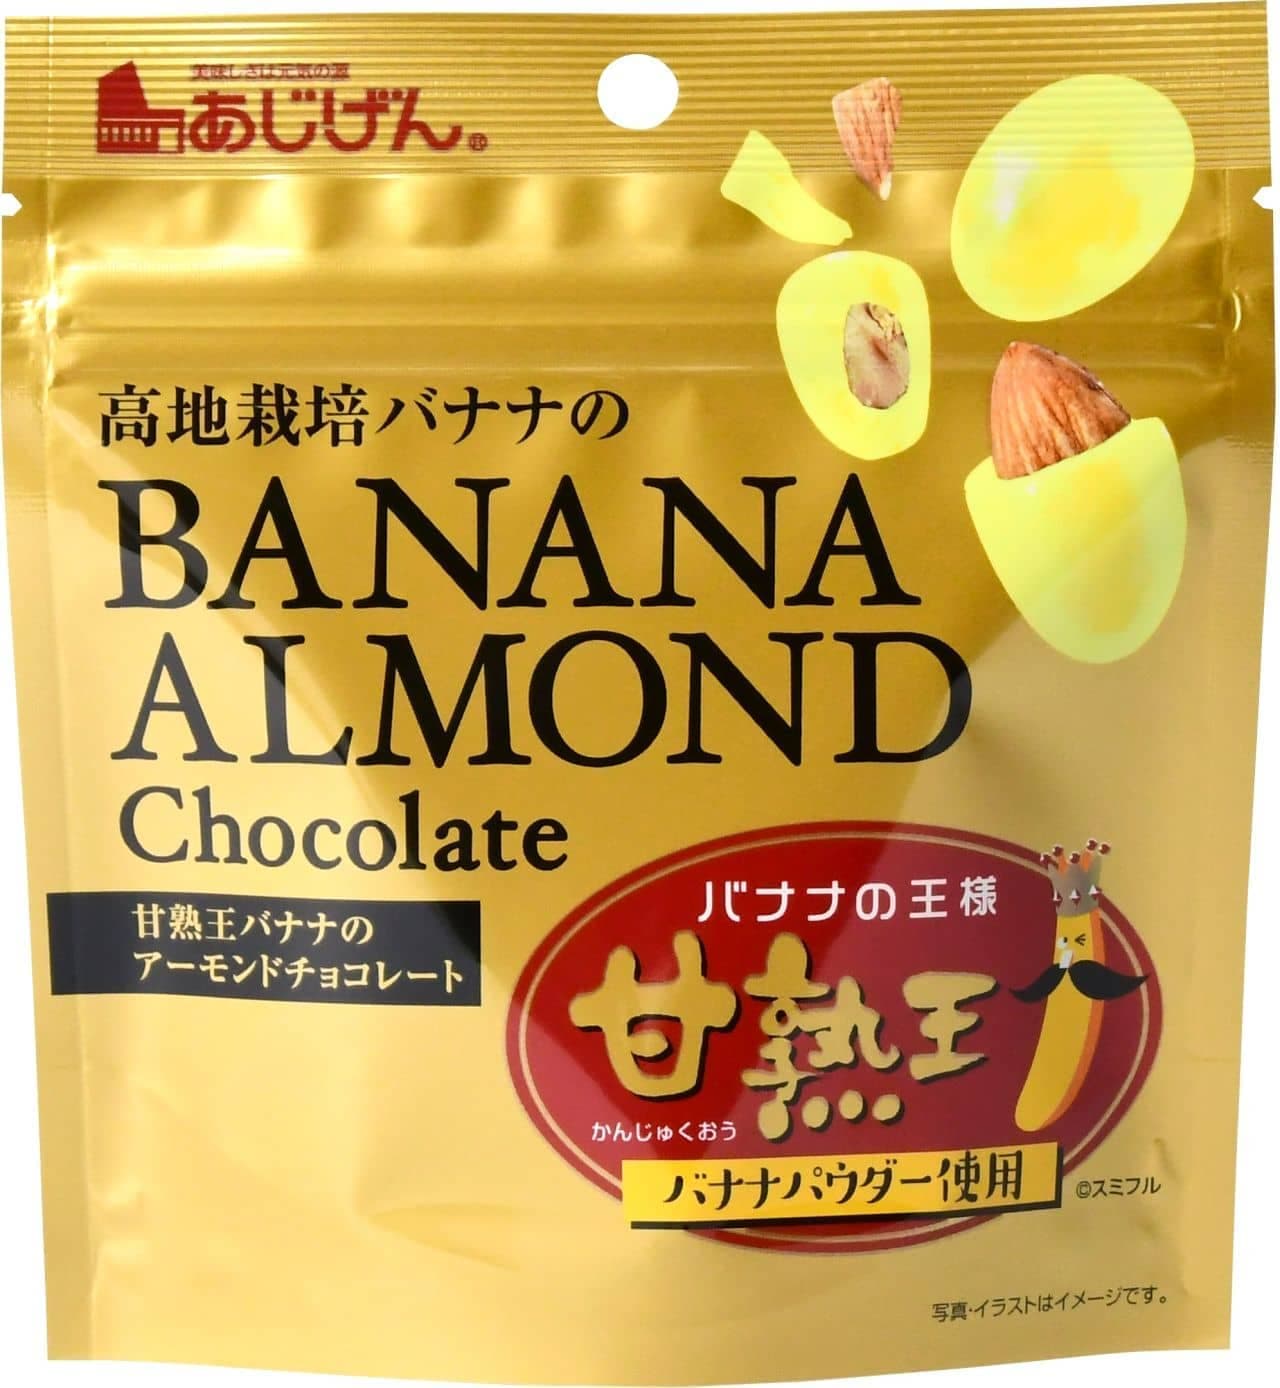 味源とスミフルジャパンがコラボ「甘熟王バナナアーモンドチョコ」